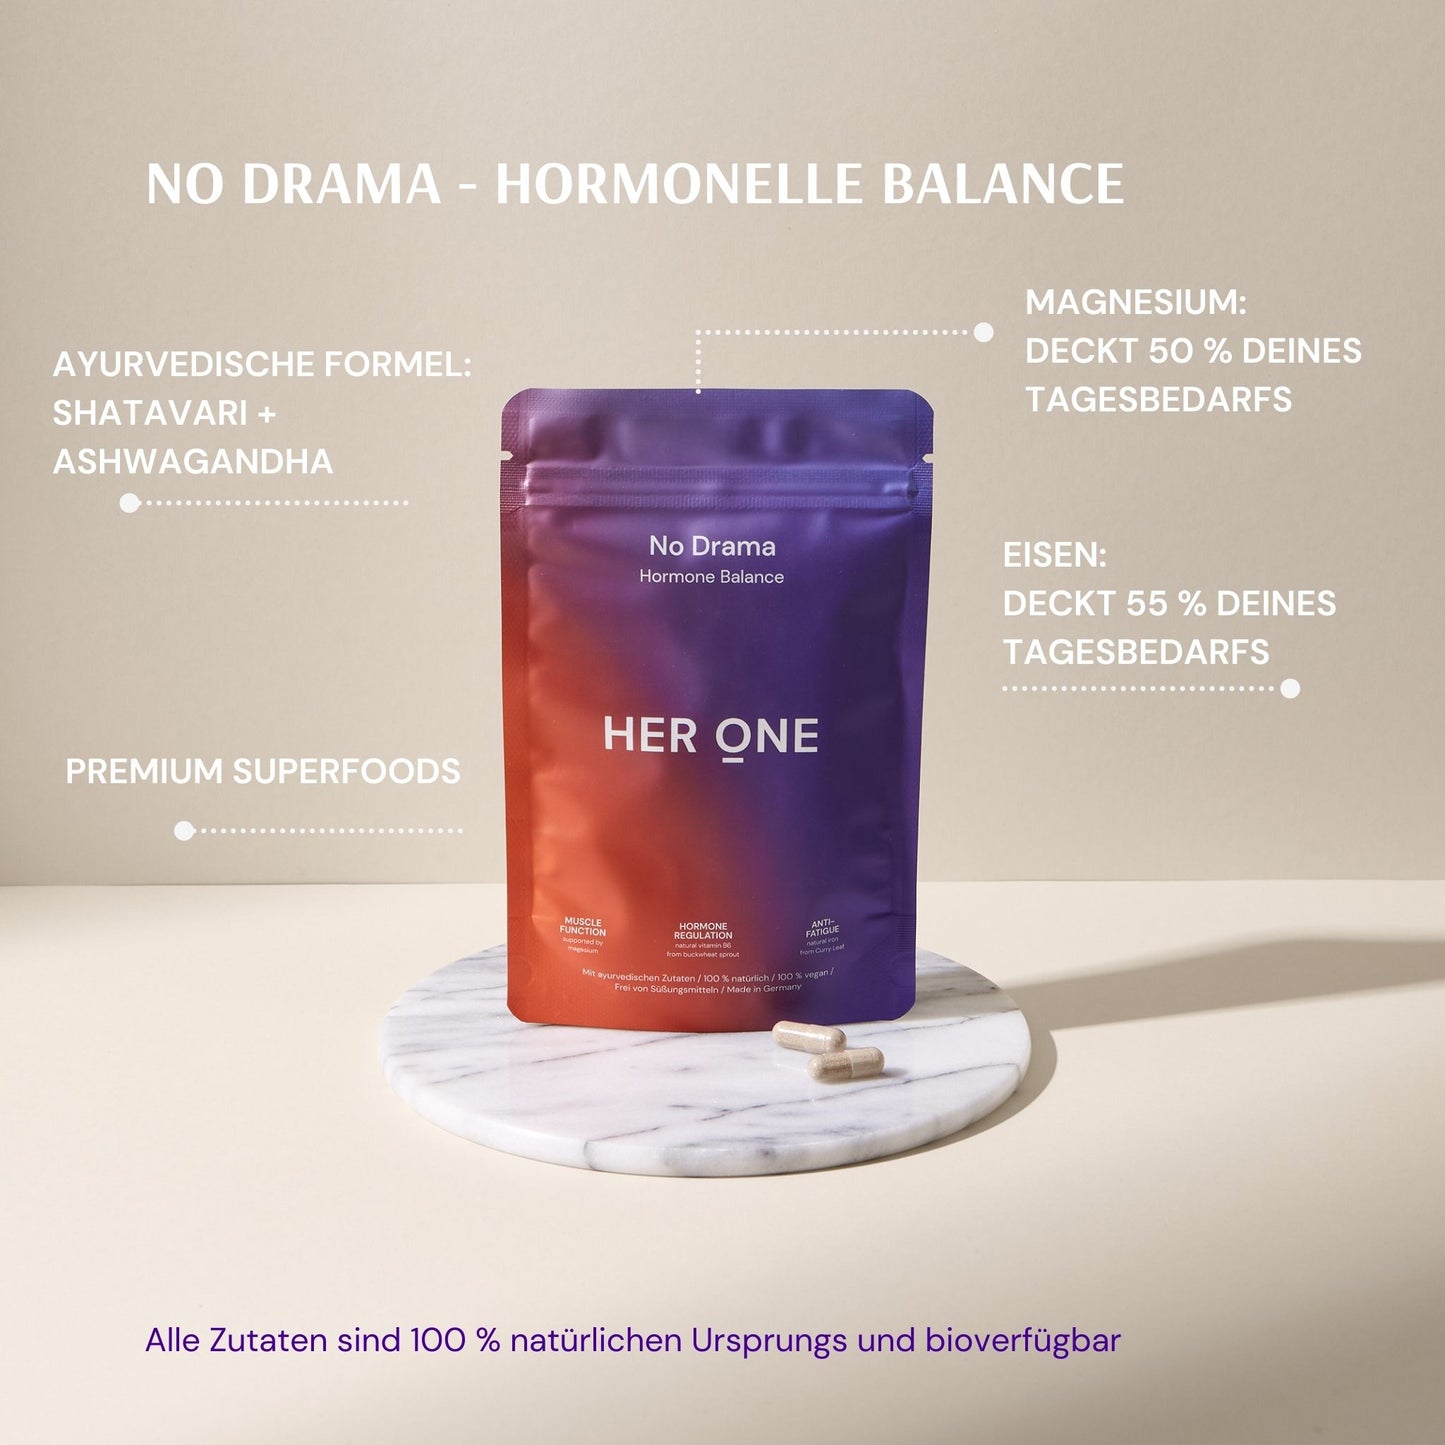 No Drama – Hormone Balance